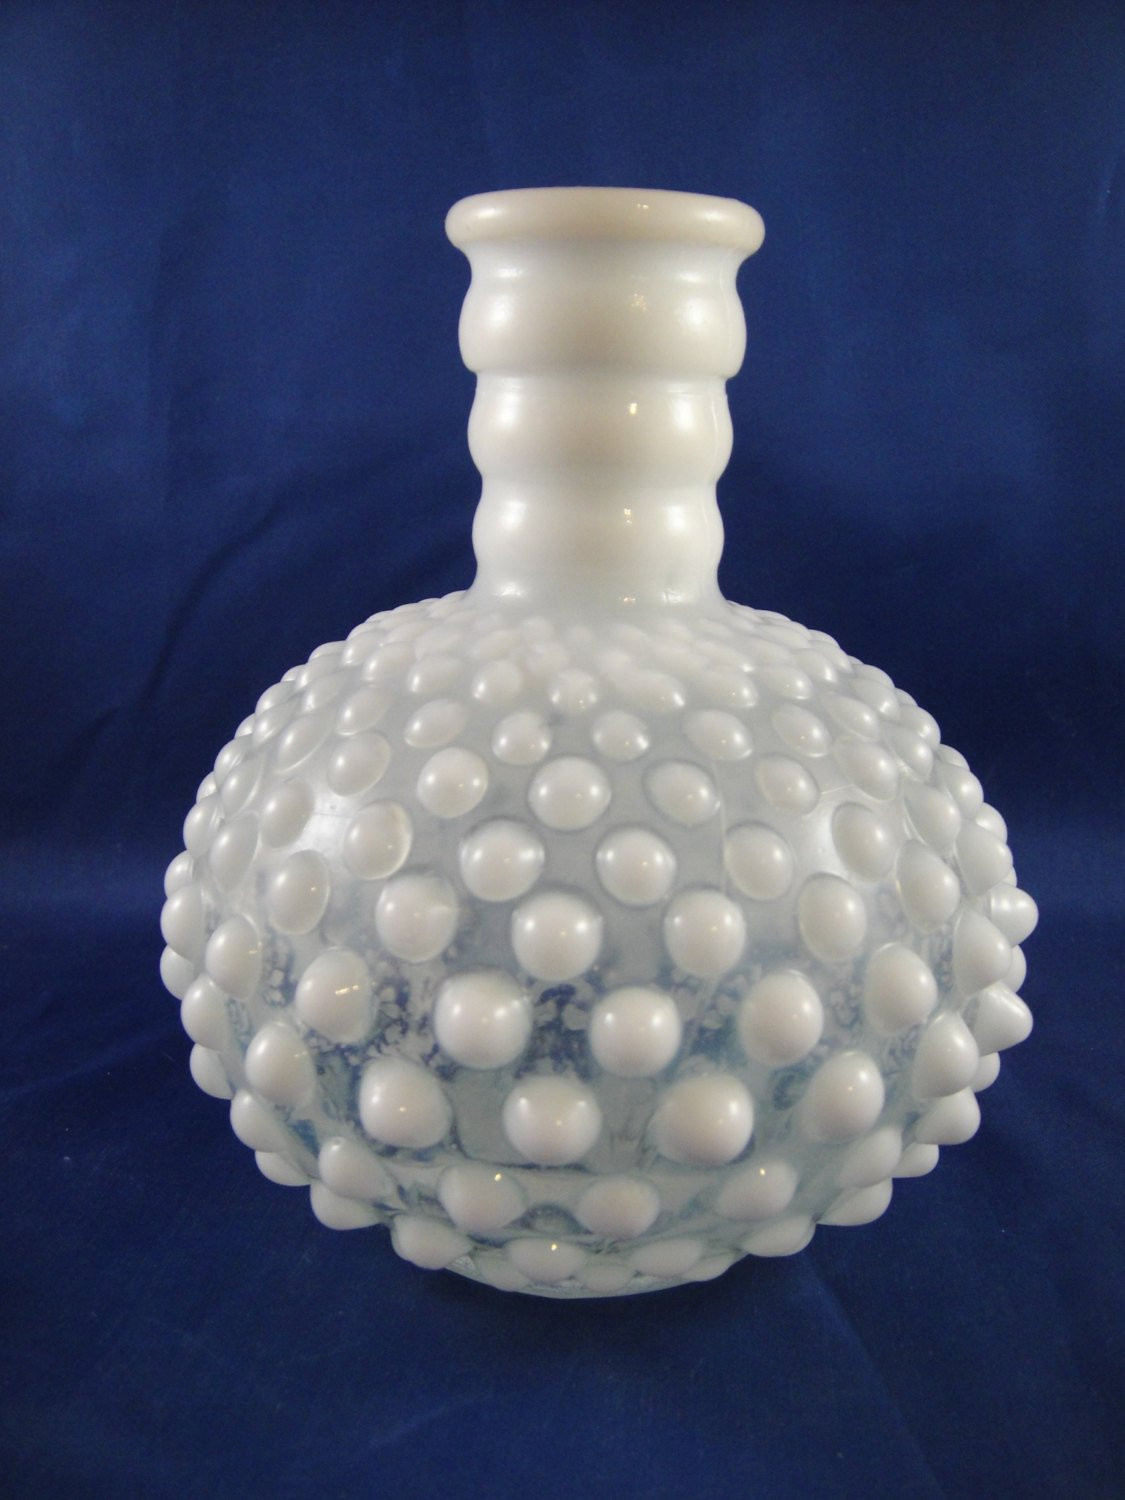 hobnail clear glass vase of hobnail perfume bottle bud vase milk glass neck etsy regarding dzoom